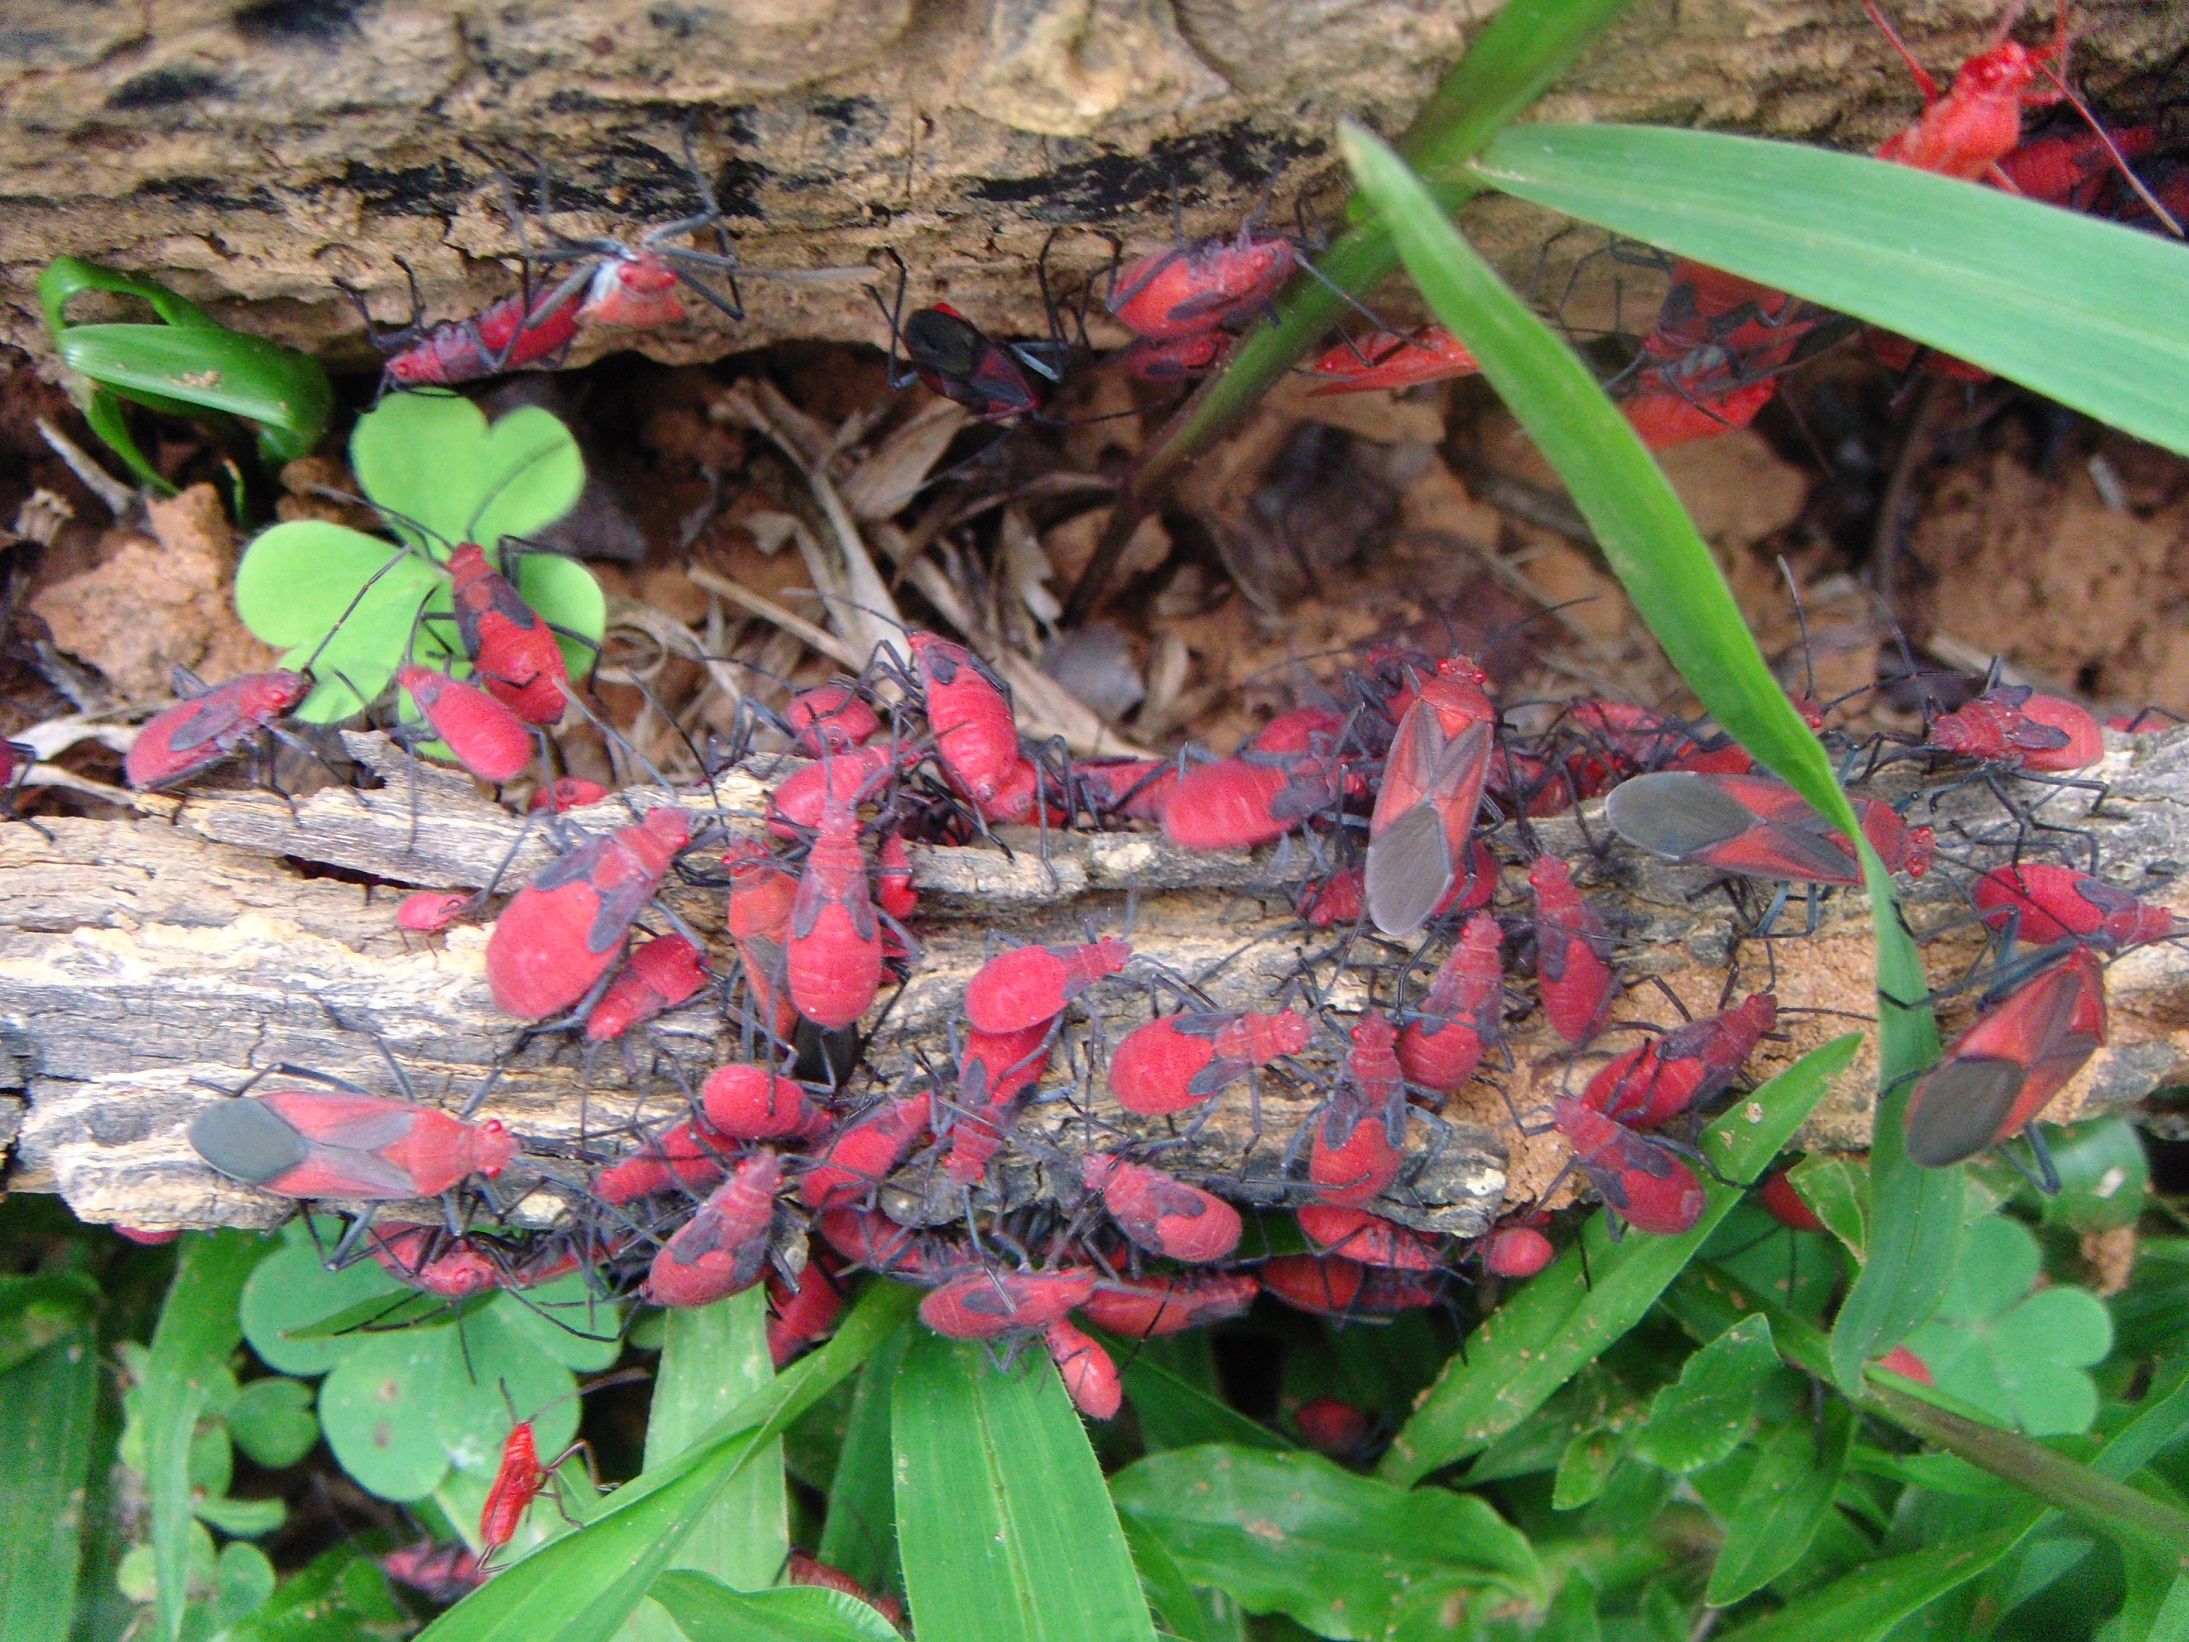 紅姬緣椿象又名紅椿象或臭屁蟲，體色為紅褐色，成蟲背部小盾板周邊有黑色的V字型斑紋，觸角及腳呈黑色